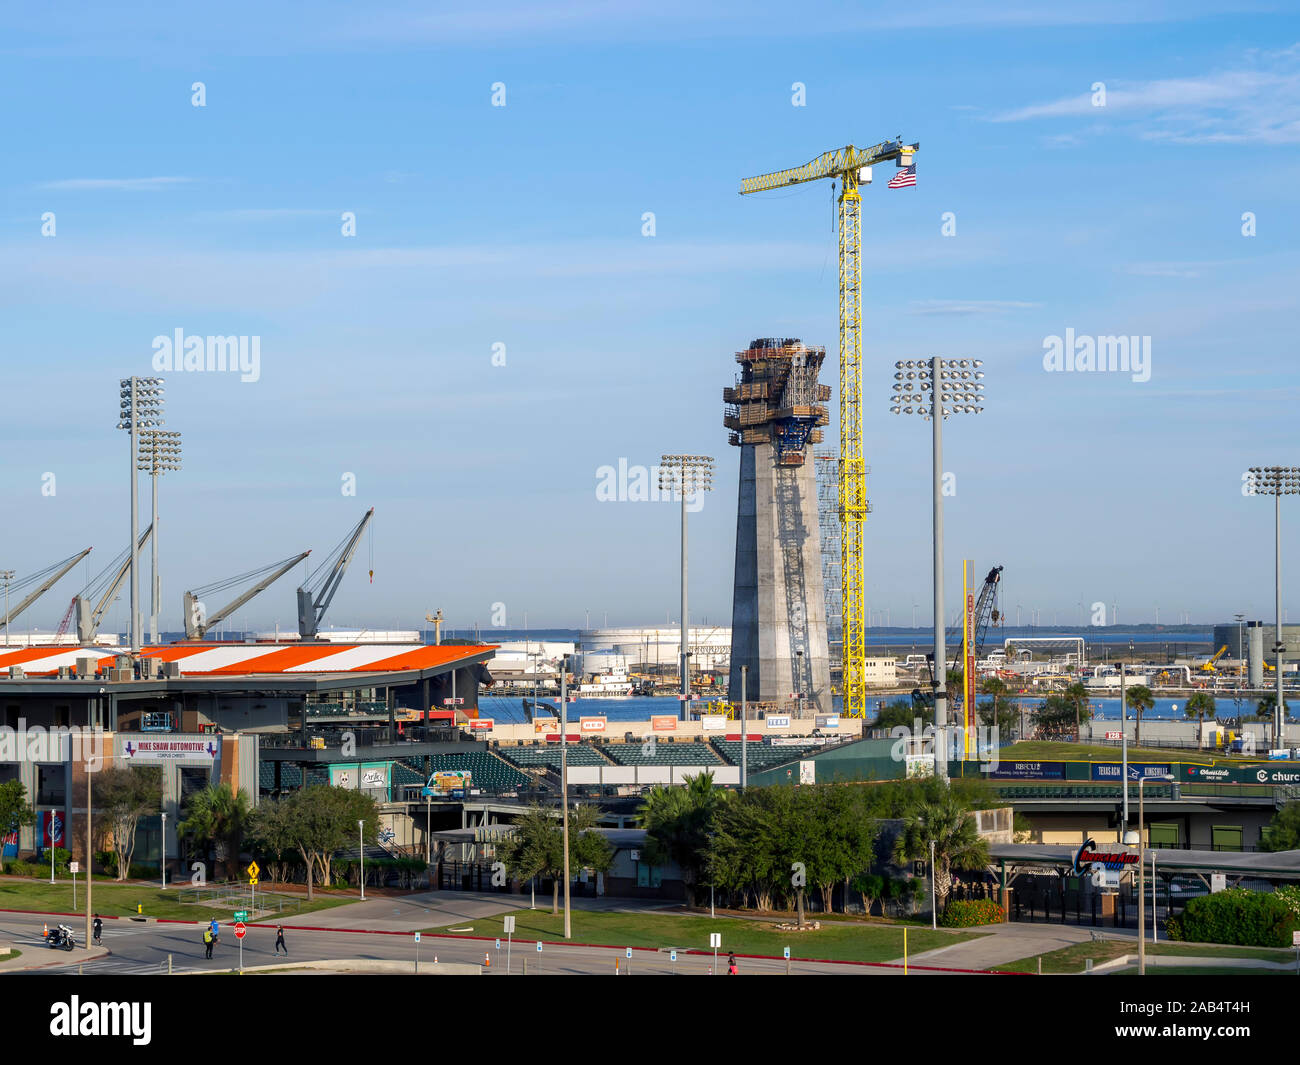 Ansicht der Whataburger Feld baseball Veranstaltungsort in Corpus Christi, Texas USA mit neuen Harbour Bridge Unterstützung Spalte im Bau im Hintergrund. Stockfoto